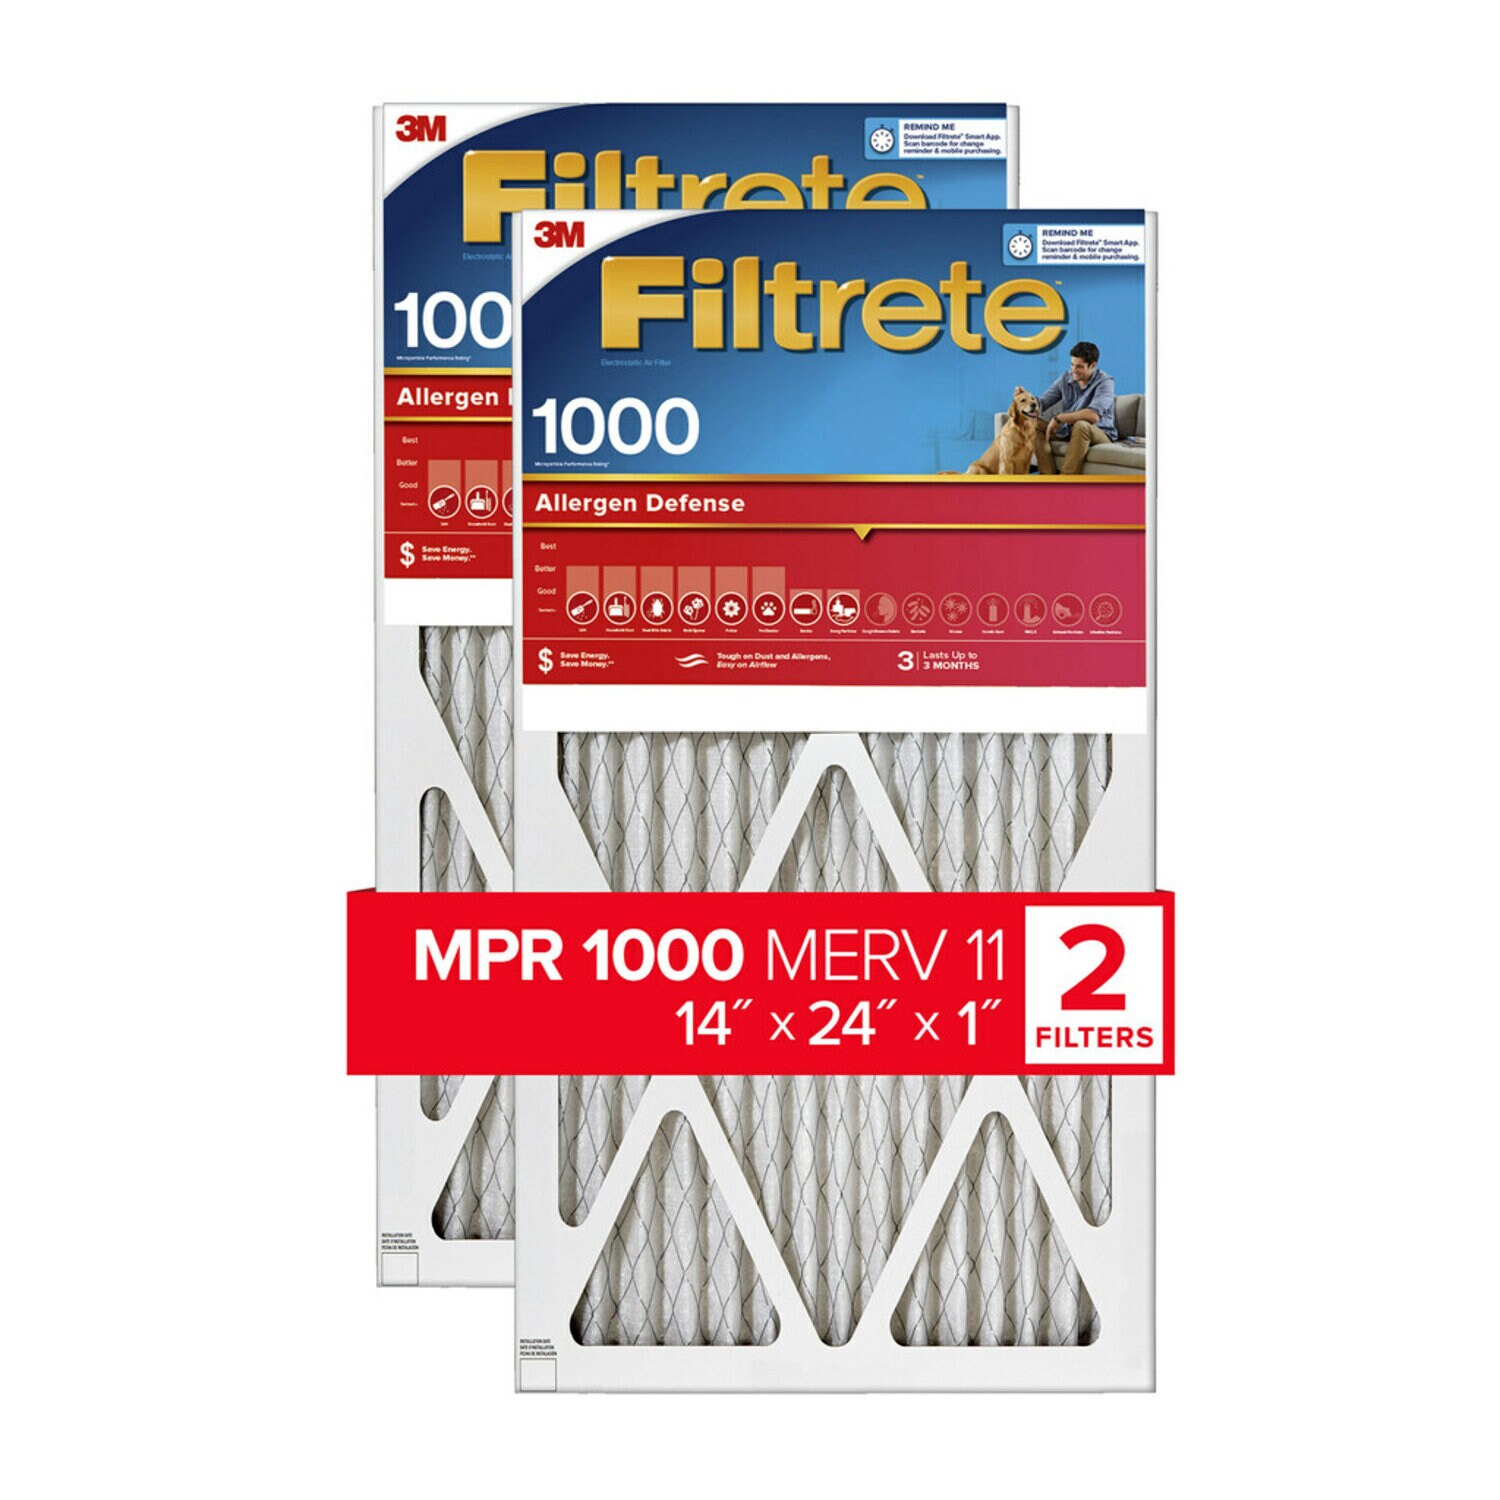 7100188897 - Filtrete Allergen Defense Air Filter, 1000 MPR, 9823-2PK-HDW, 14 in x
24 in x 1 in (35,5 cm x 60,9 cm x 2,5 cm)